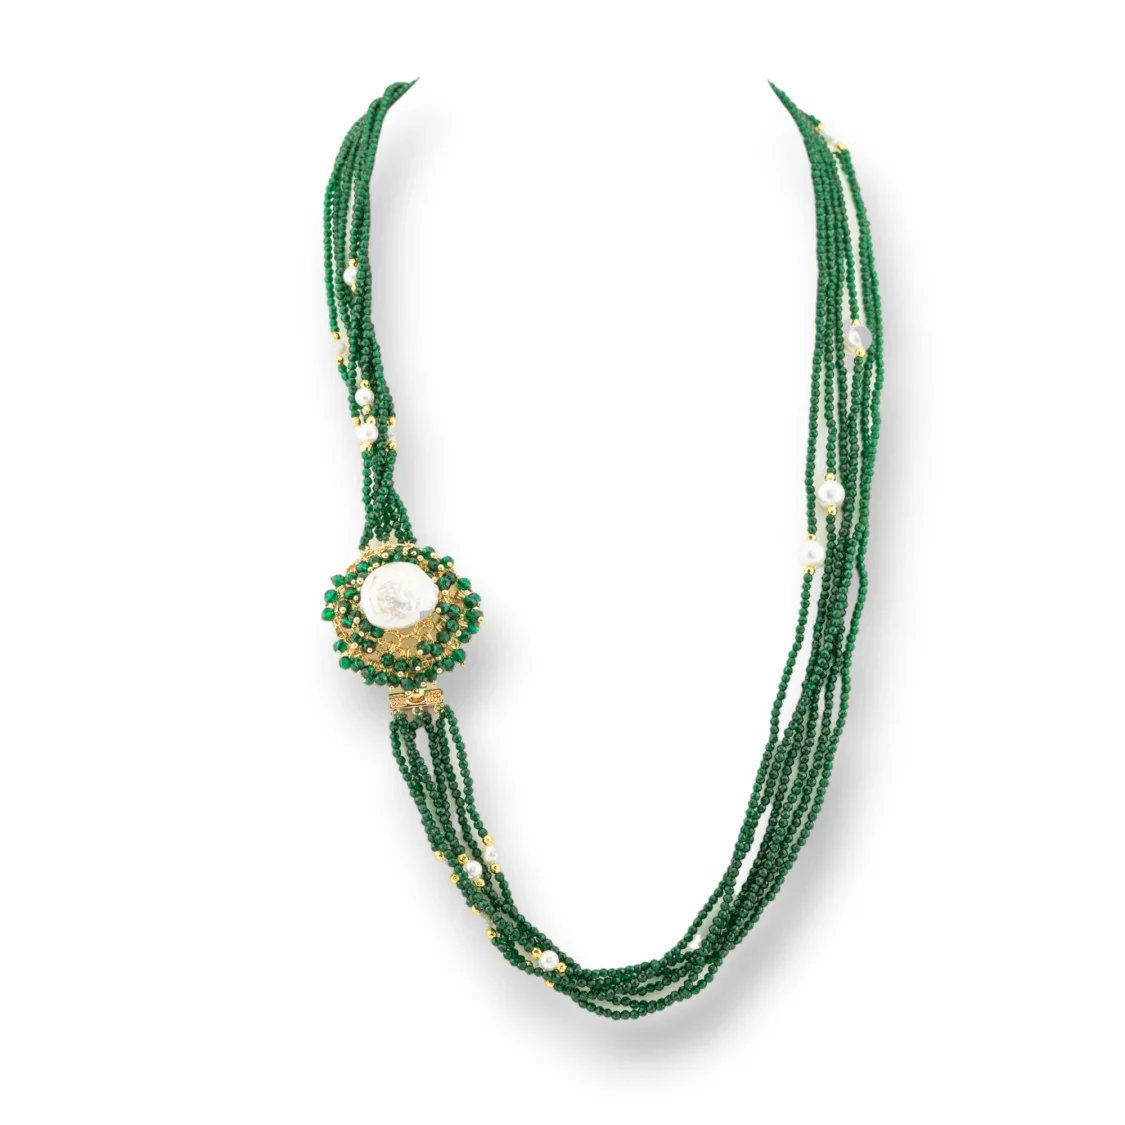 Collana Bijoux Multifilo Di Cristalli CZ Con Perle Di Fiume E Maiorca E Ematite 60cm Verde-DESIGN ITALY | Worldofjewel.com